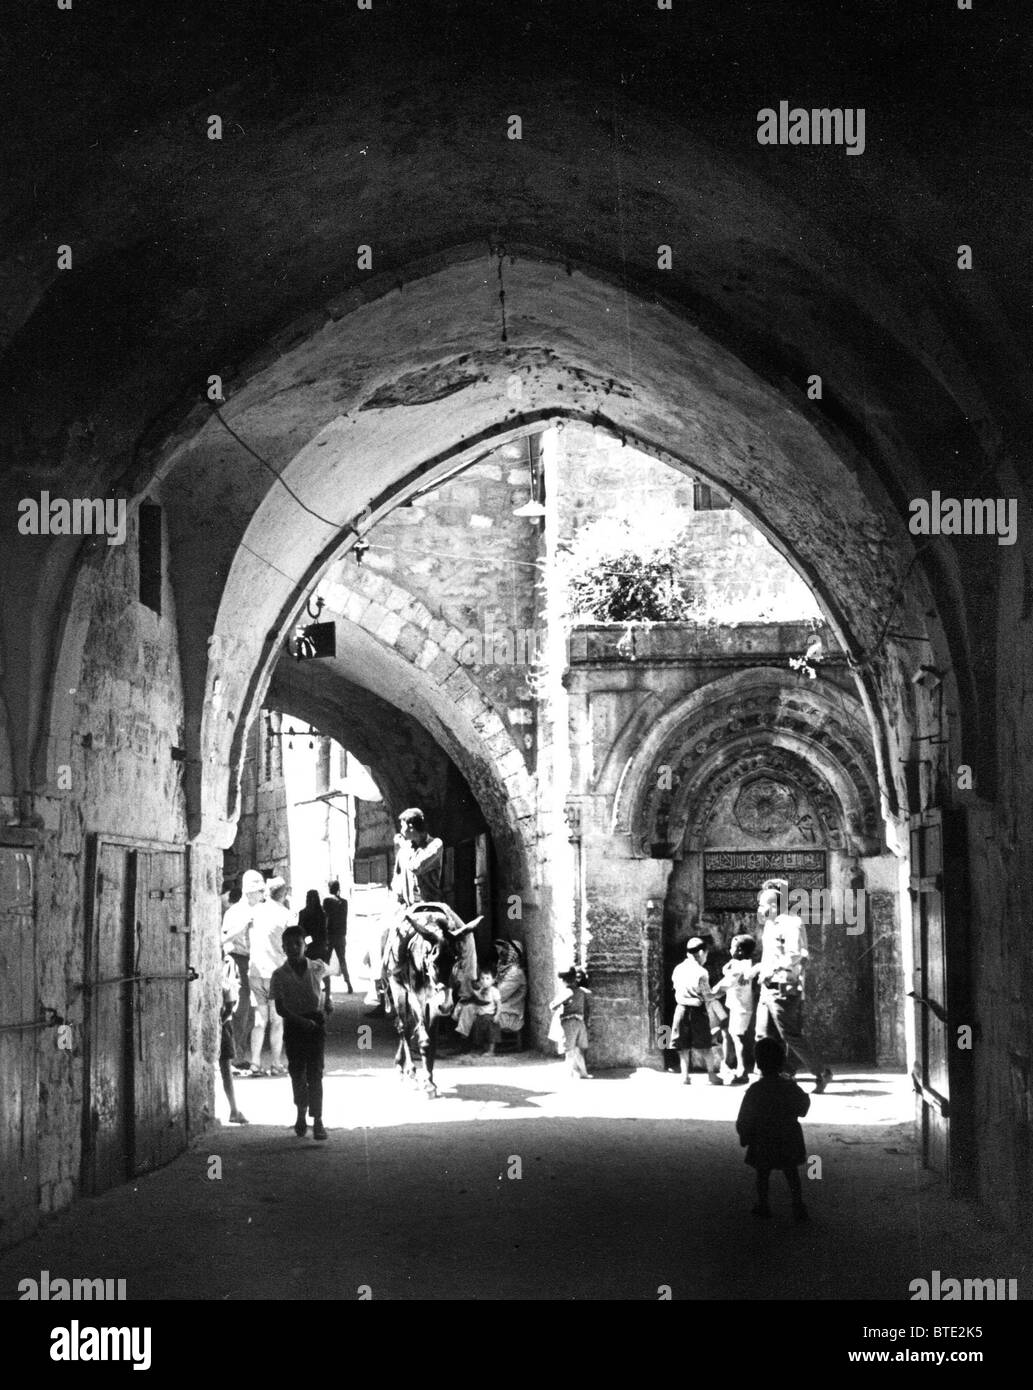 5457. Street scene in the Old City of Jerusalem Stock Photo